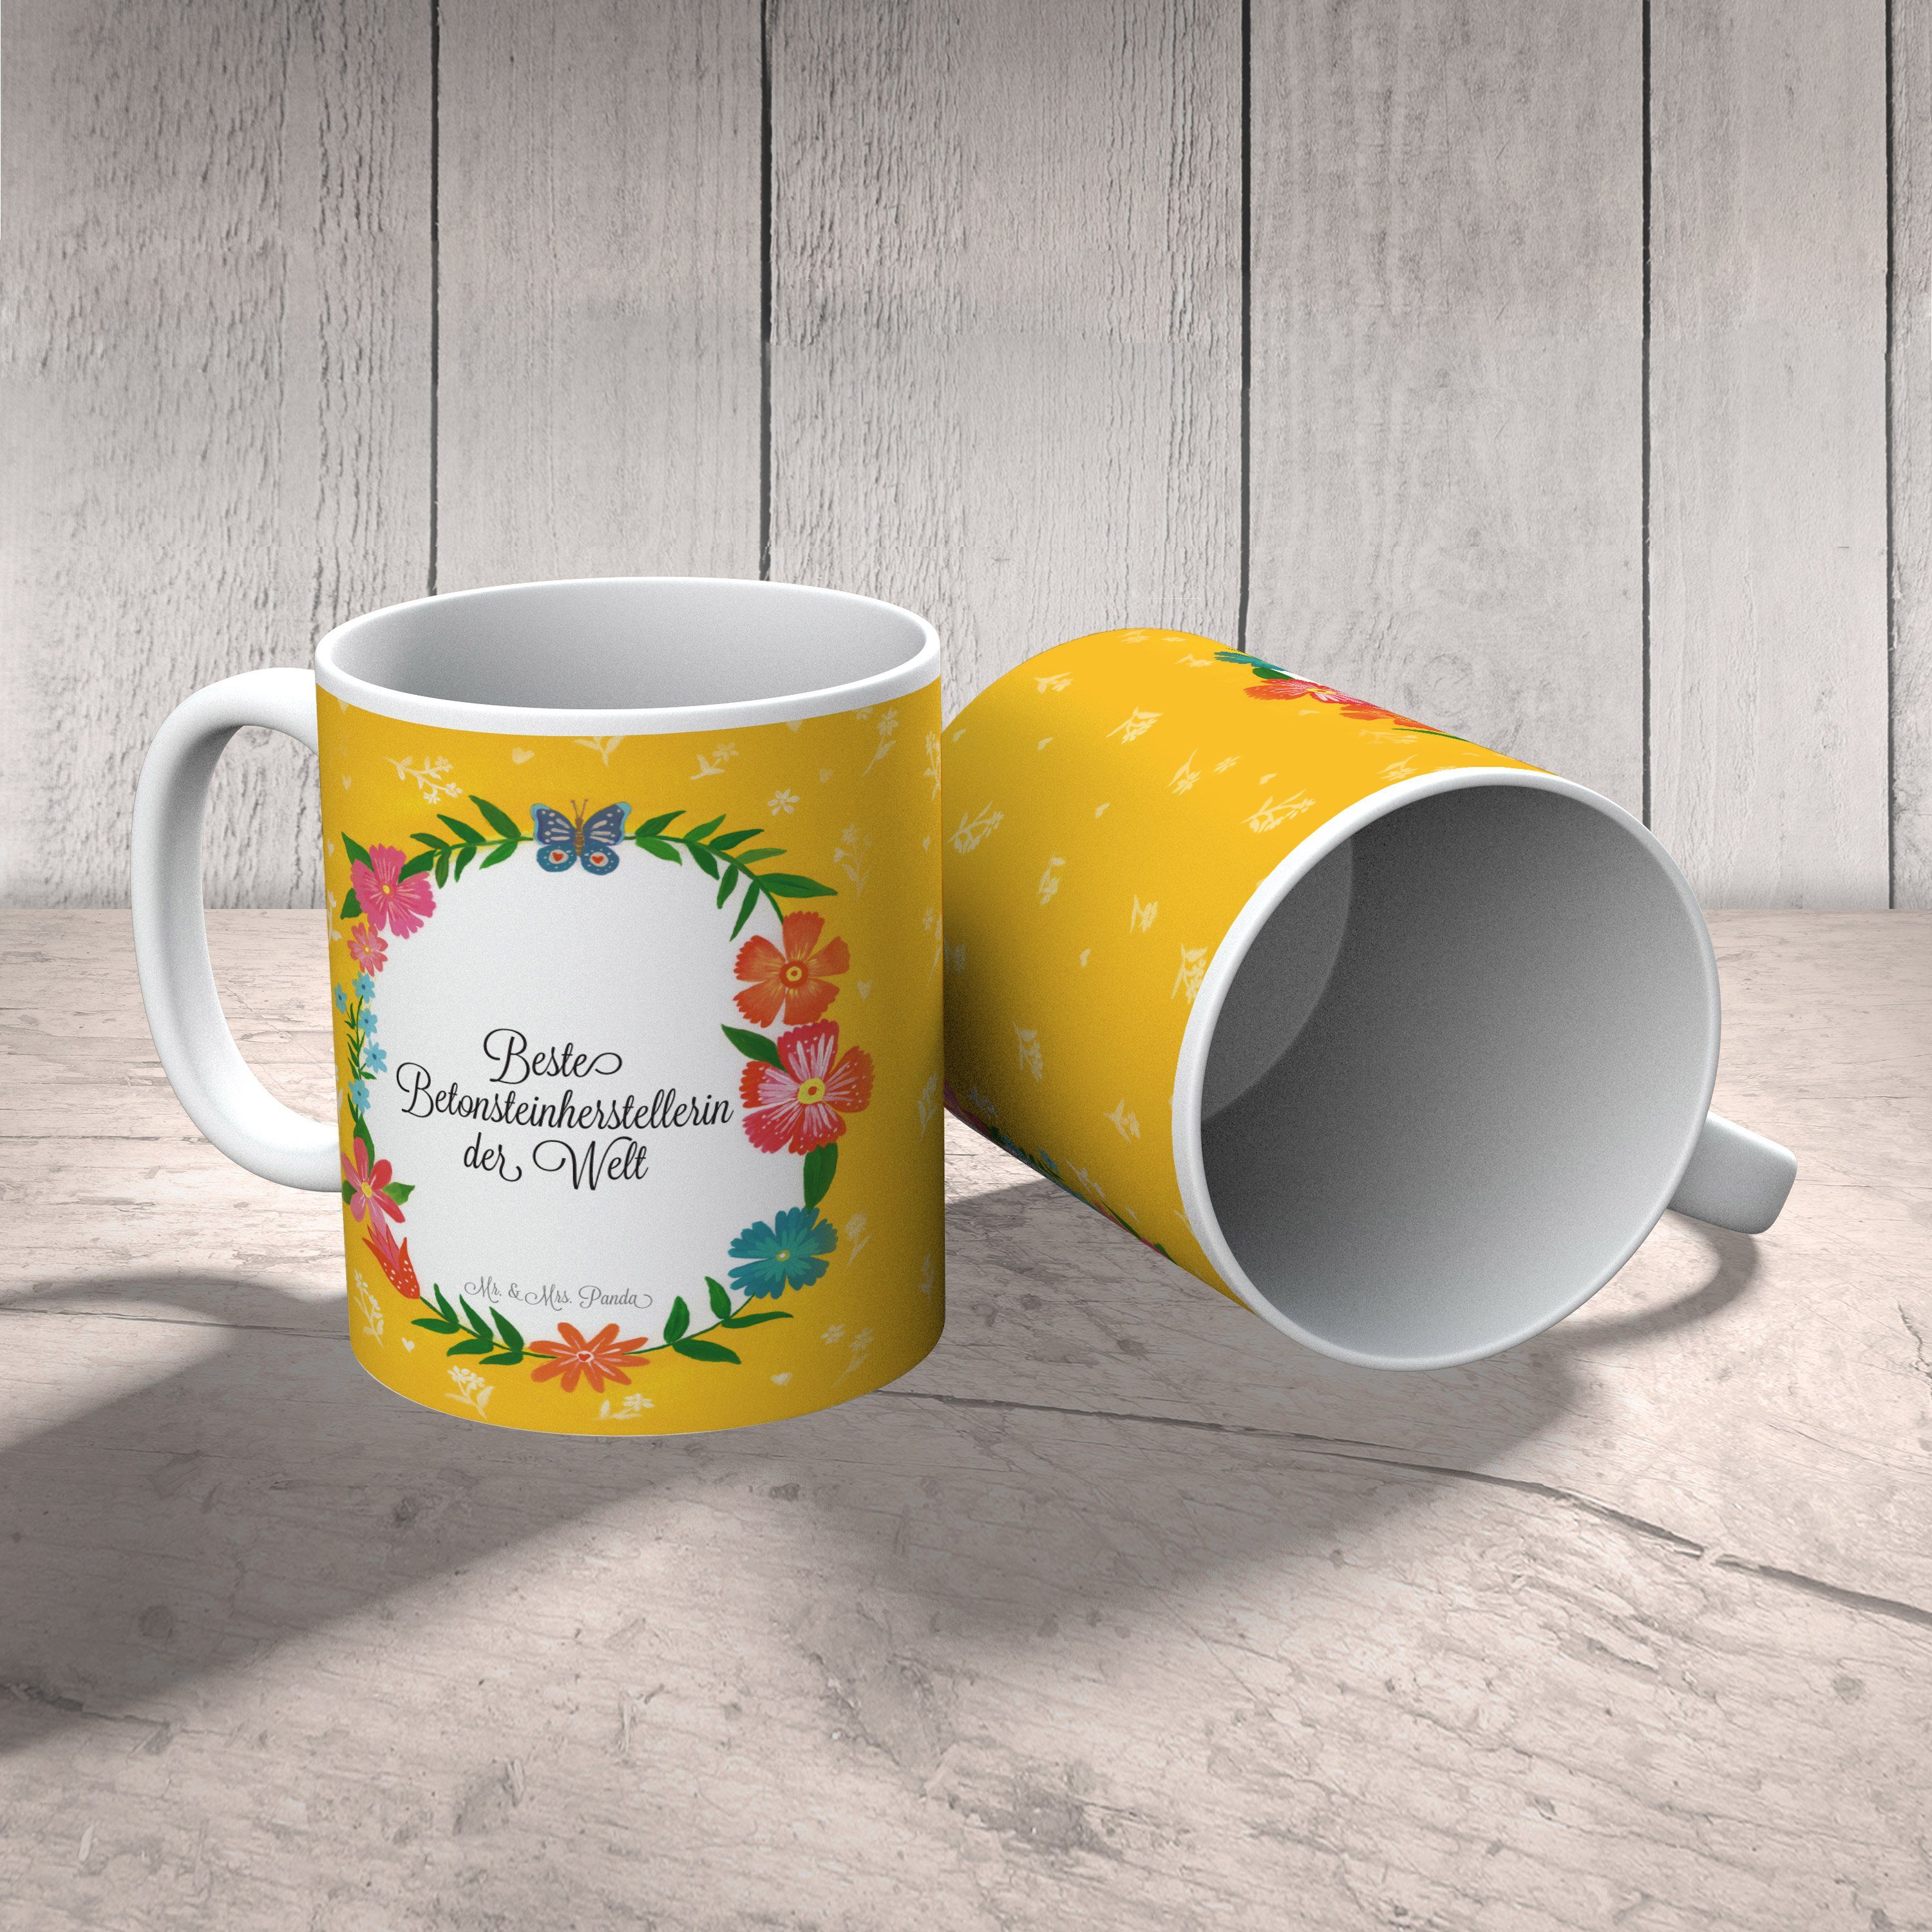 Mr. & Mrs. Panda Tasse Geschenk, Keramik Rente, Betonsteinherstellerin - Motive, Tasse Kaffeebecher